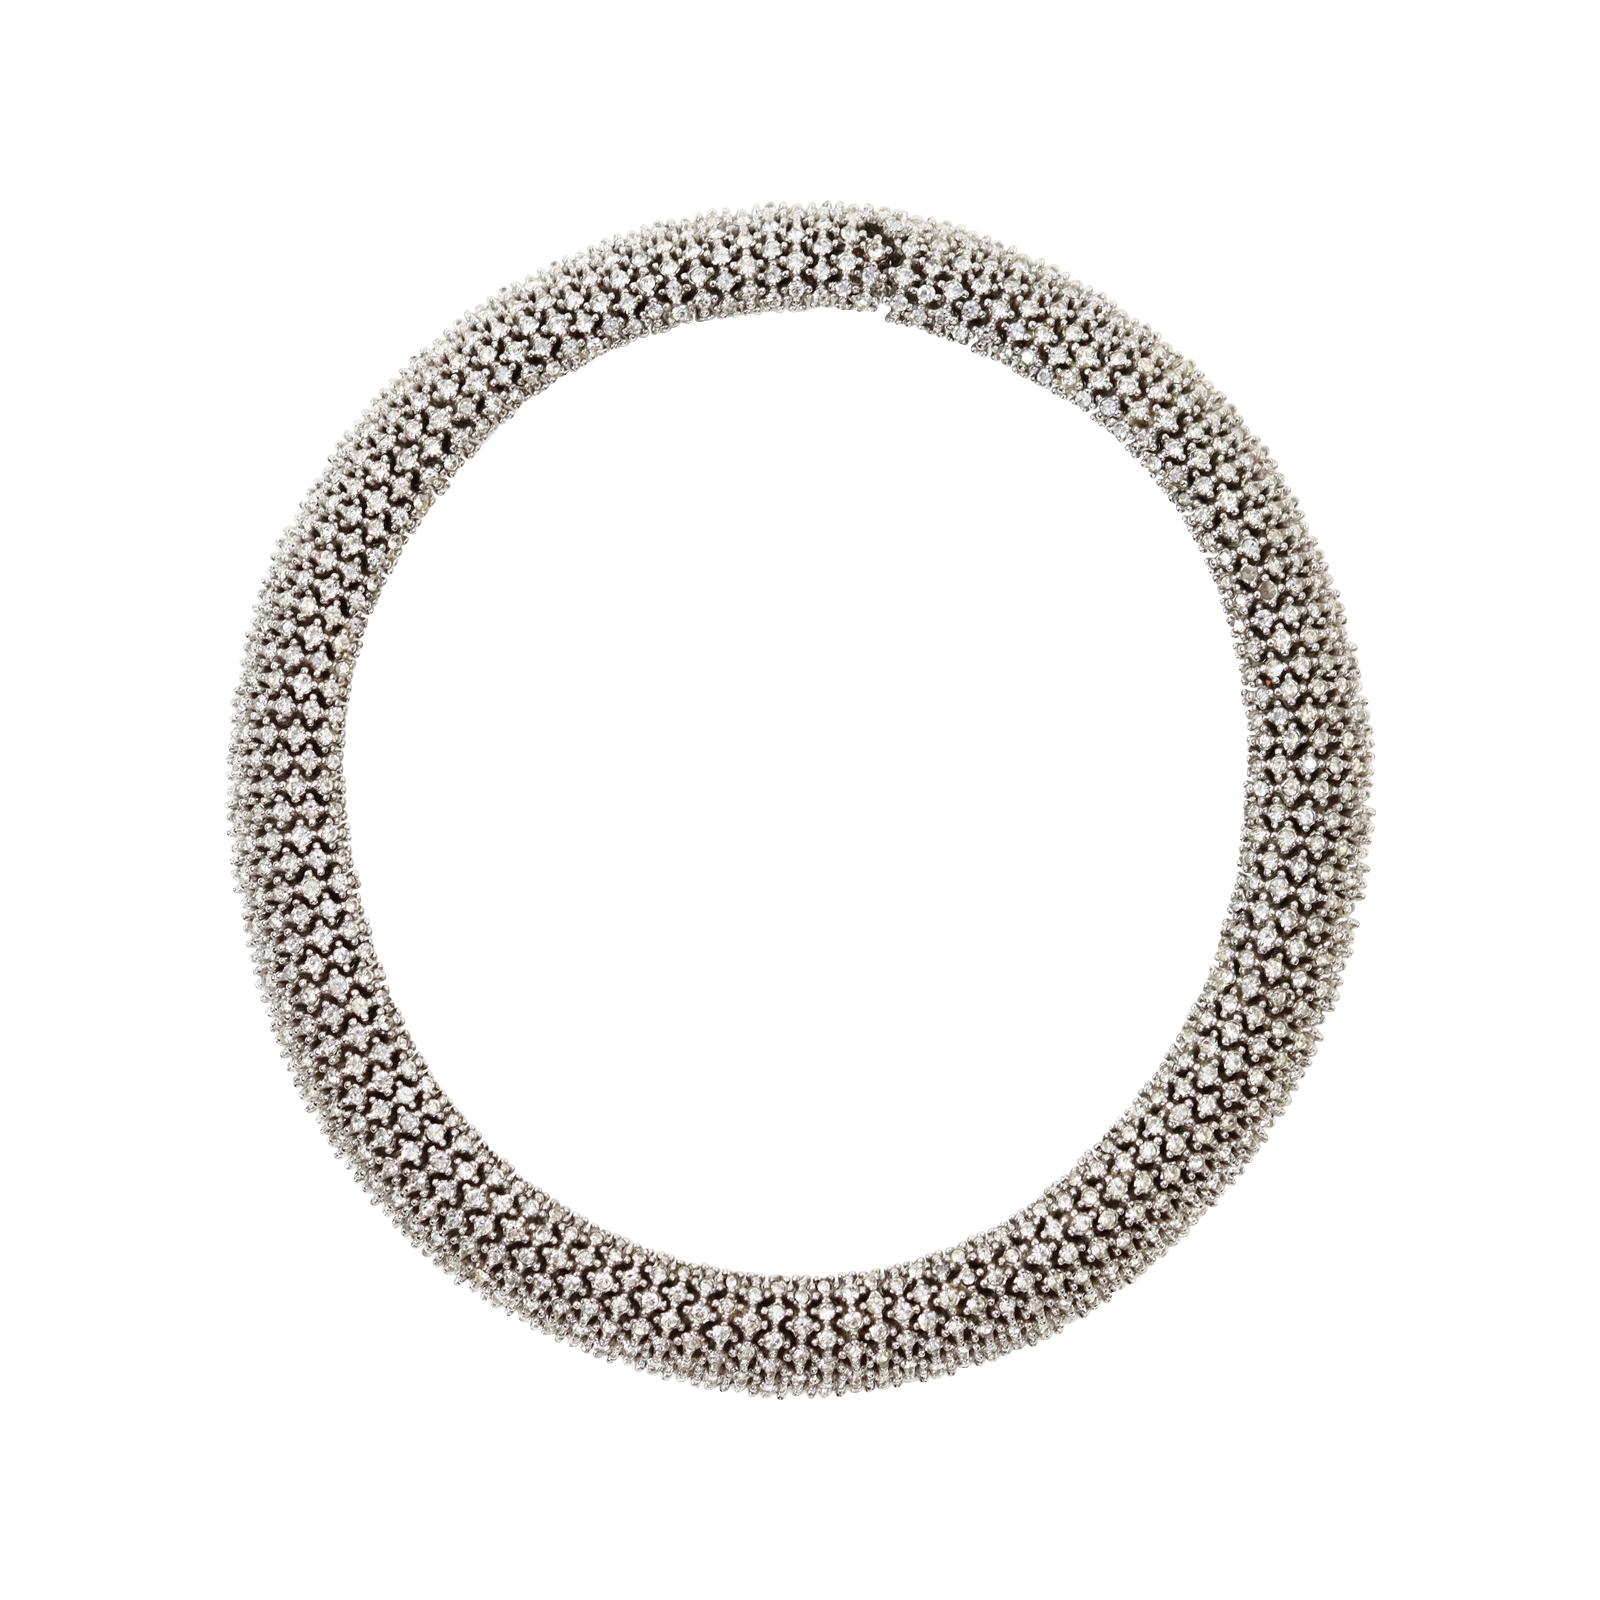 Vintage Ciner Silber Ton Diamante gerundet Choker Halskette CIRCA 1980s. Mehr braucht man über diese Schönheit nicht zu sagen.  Es handelt sich um einen Klassiker, der über Jahrhunderte hinweg hergestellt wurde.  Immer mit Stil.

Ciner ist nicht